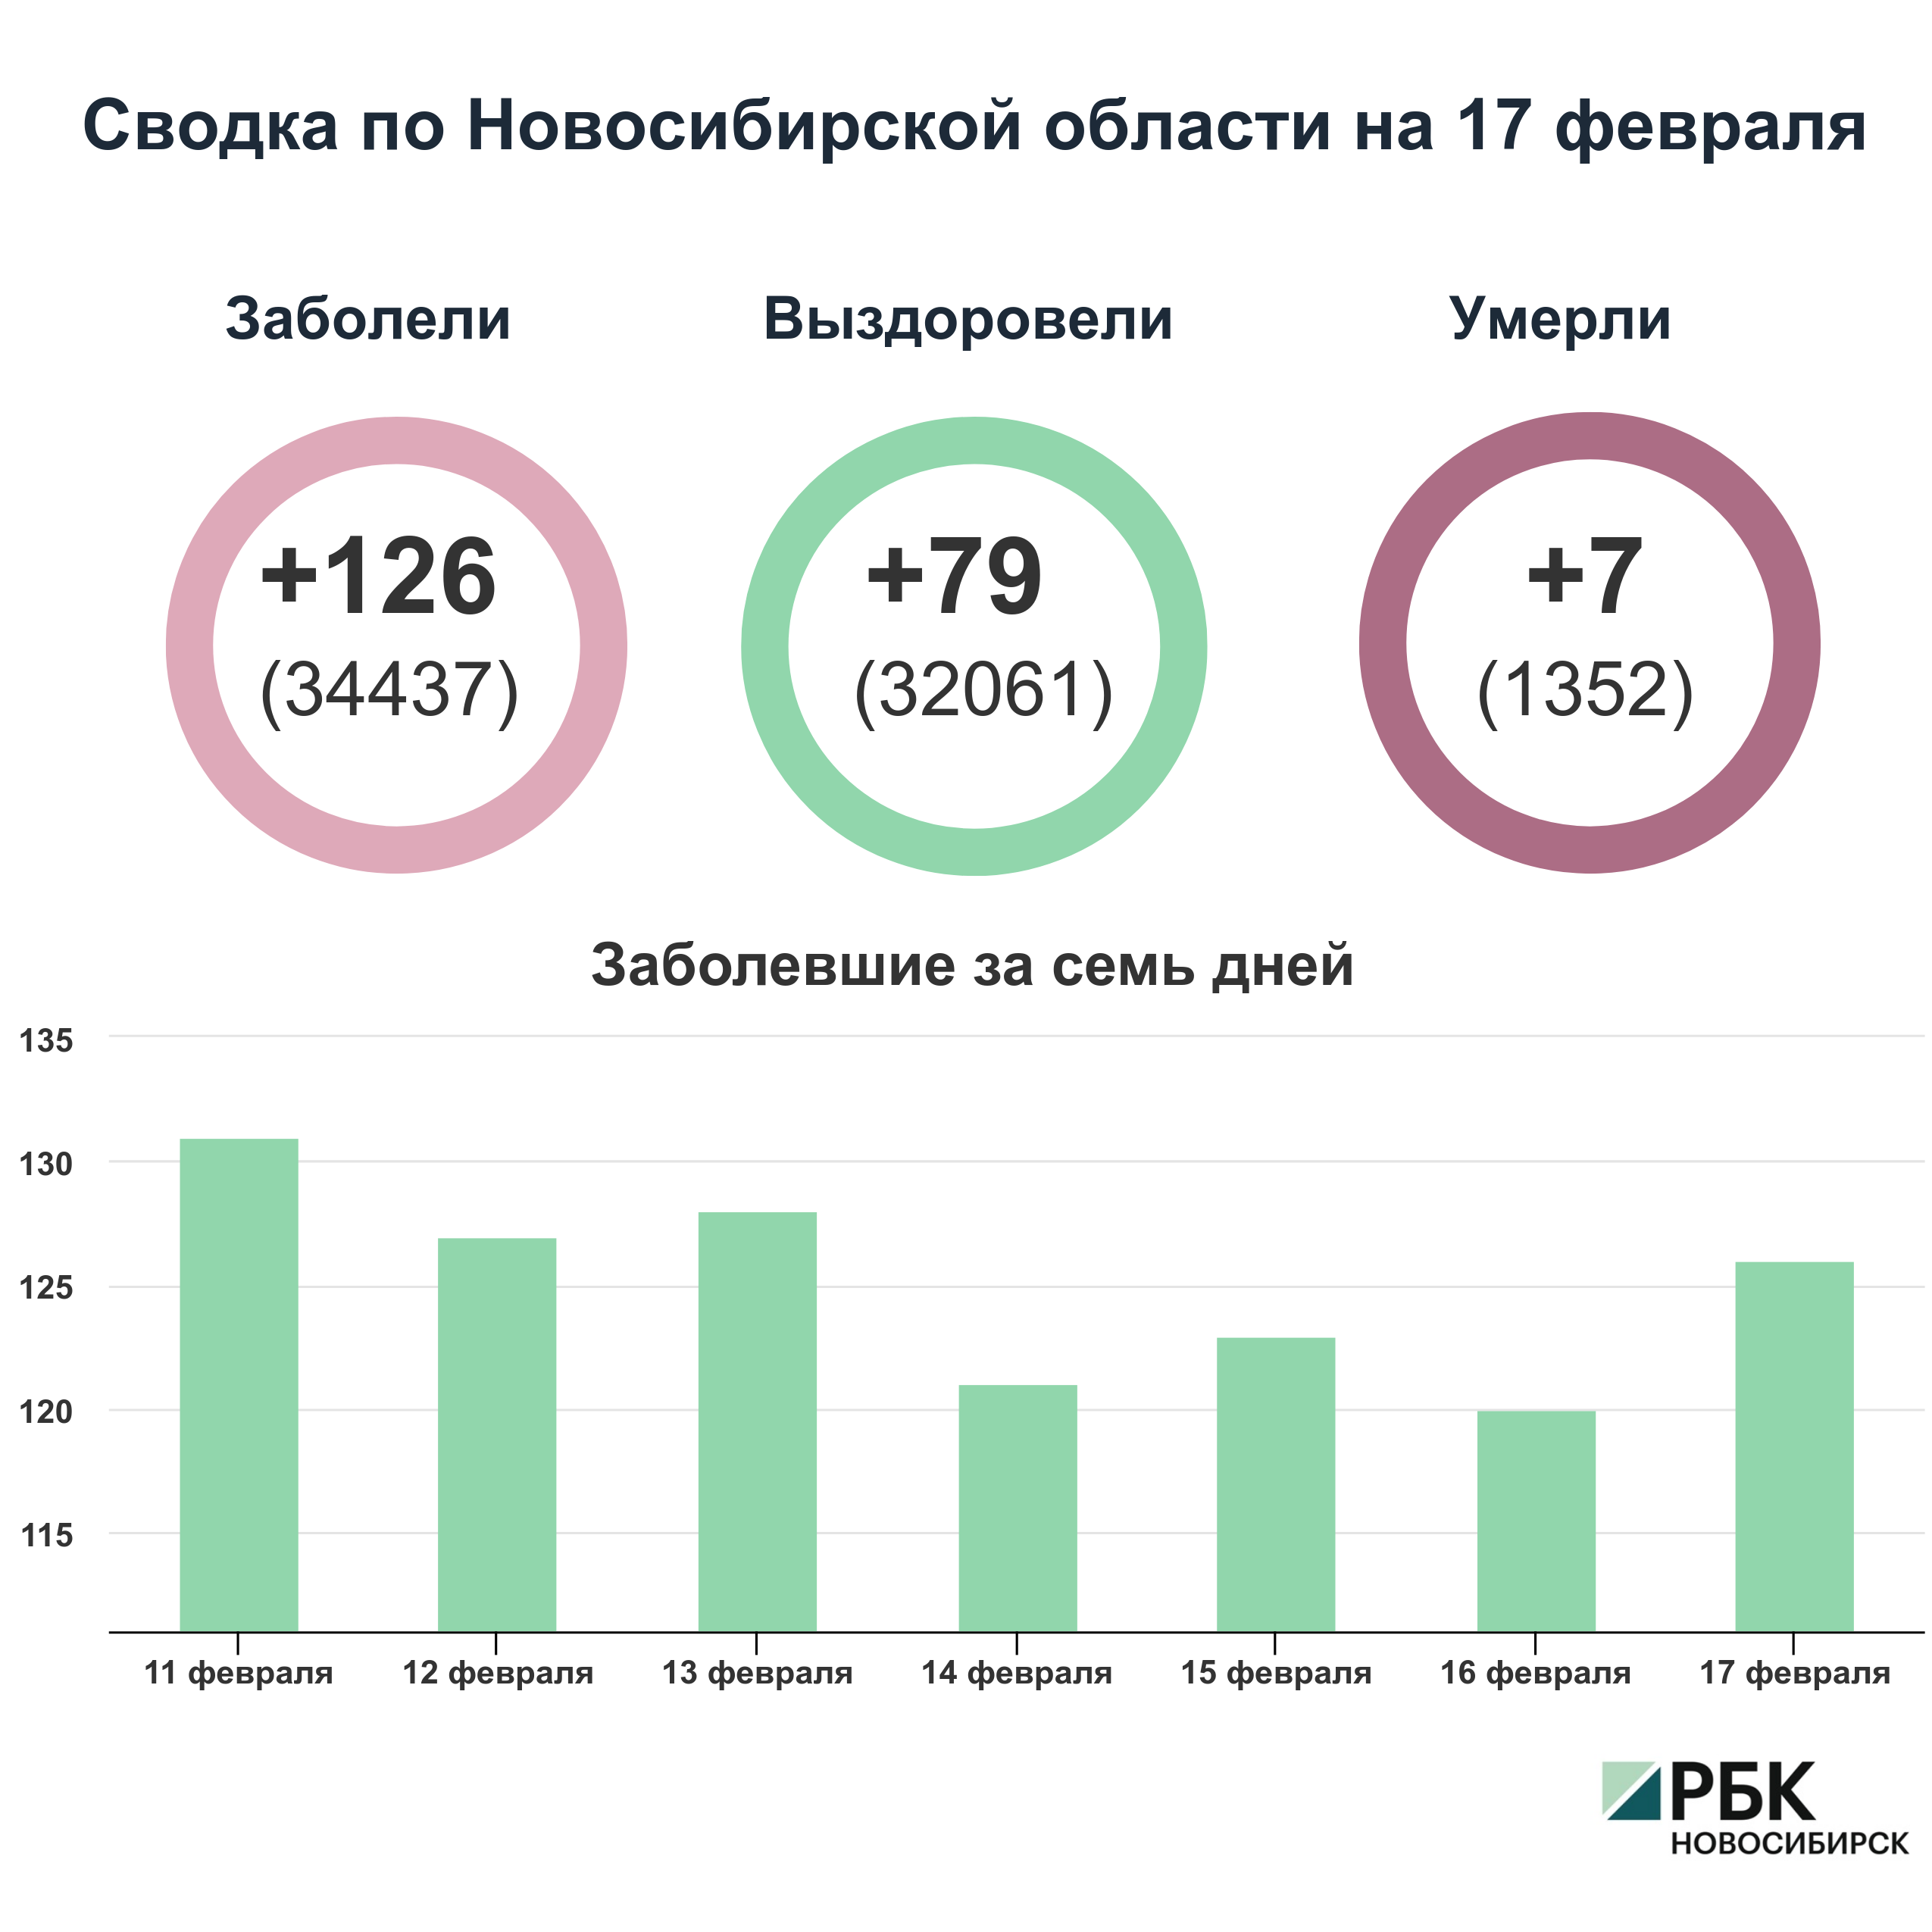 Коронавирус в Новосибирске: сводка на 17 февраля